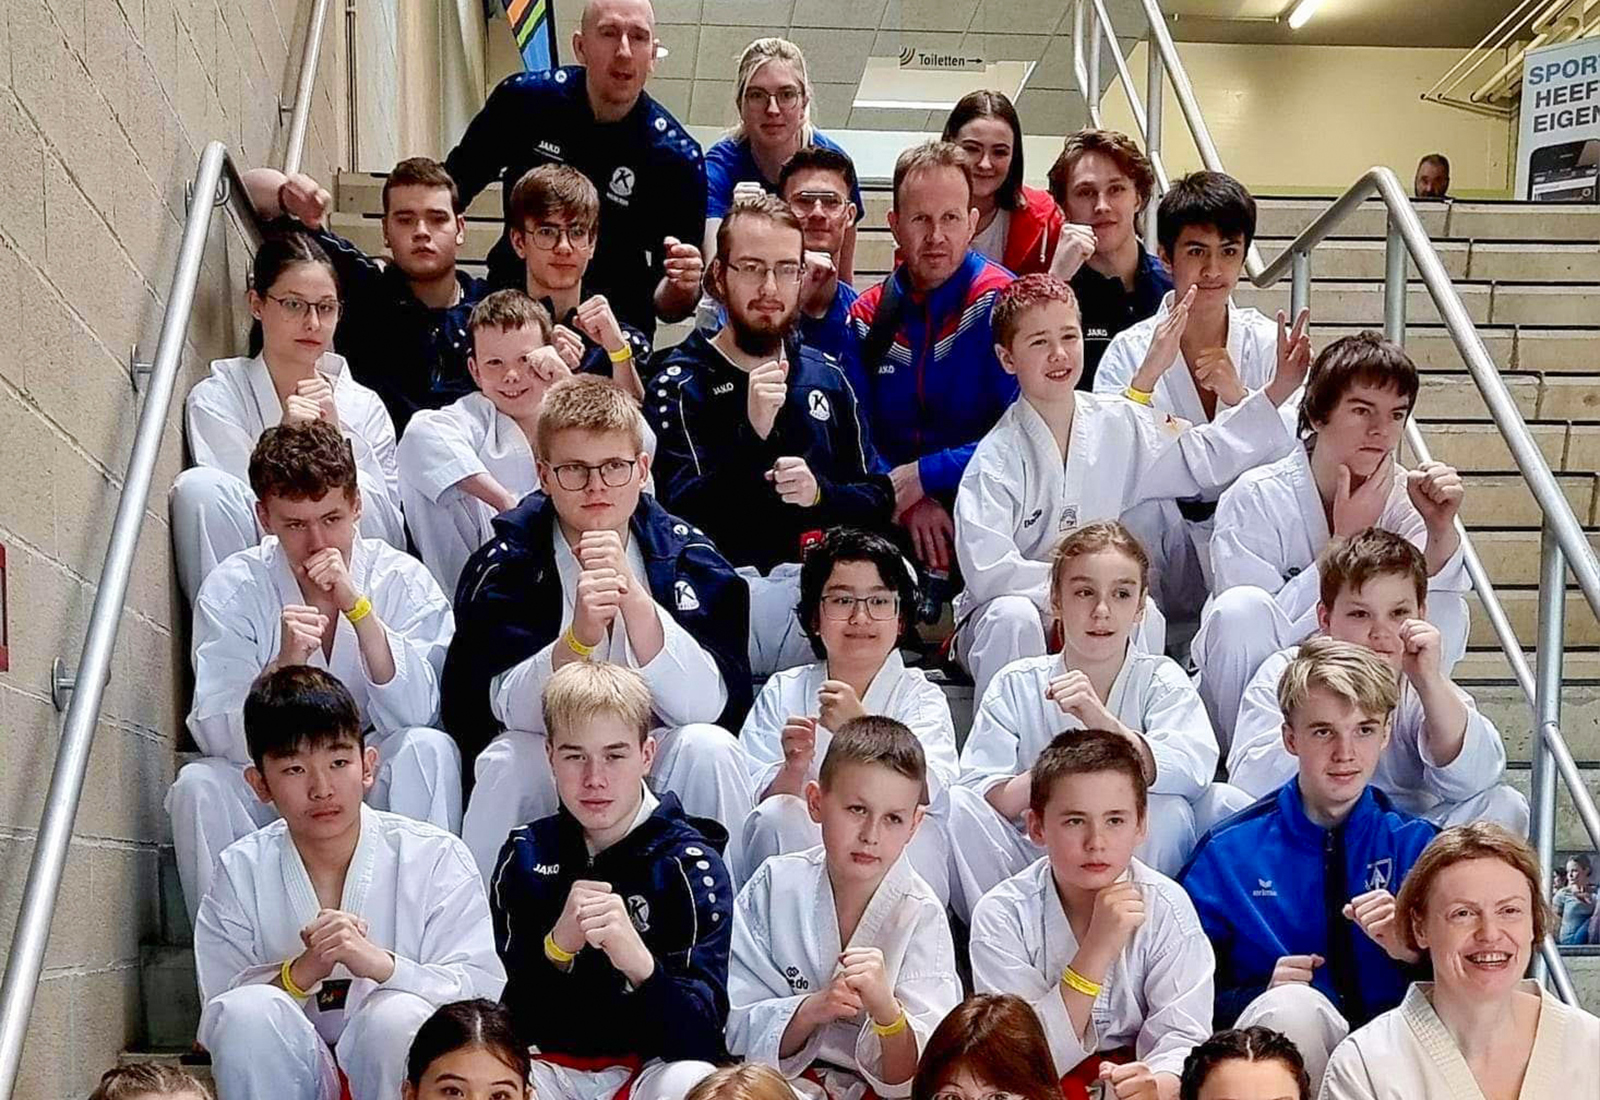 Keflvískir taekwondo  keppendur á móti í Belgíu